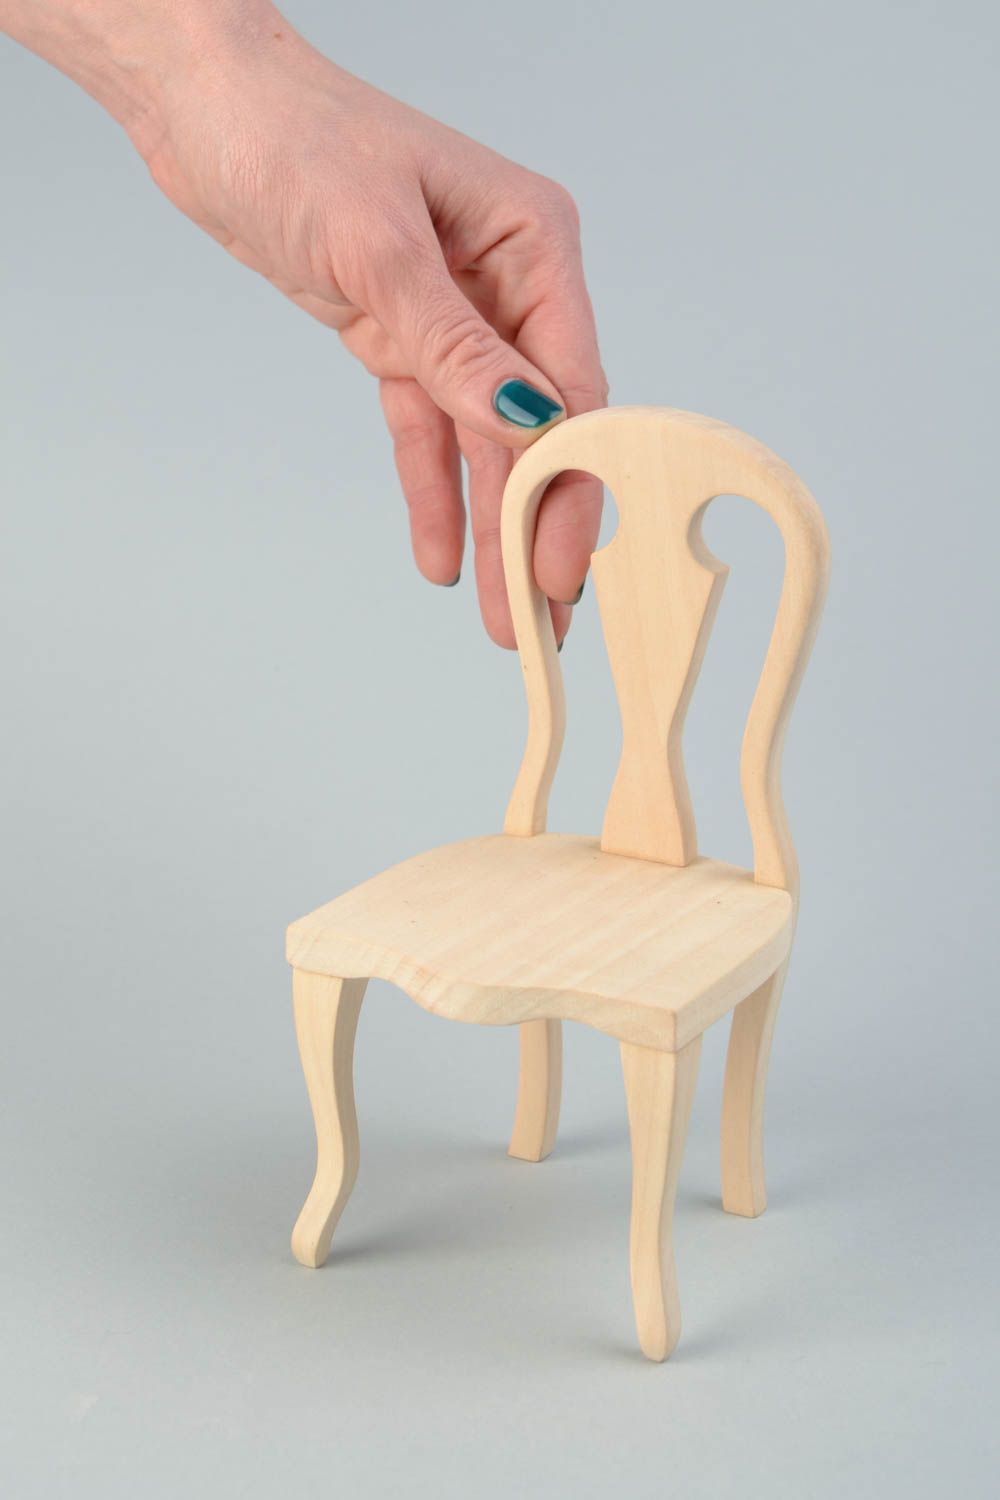 Деревянный стул для куклы заготовка под роспись или декупаж ручной работы фото 2